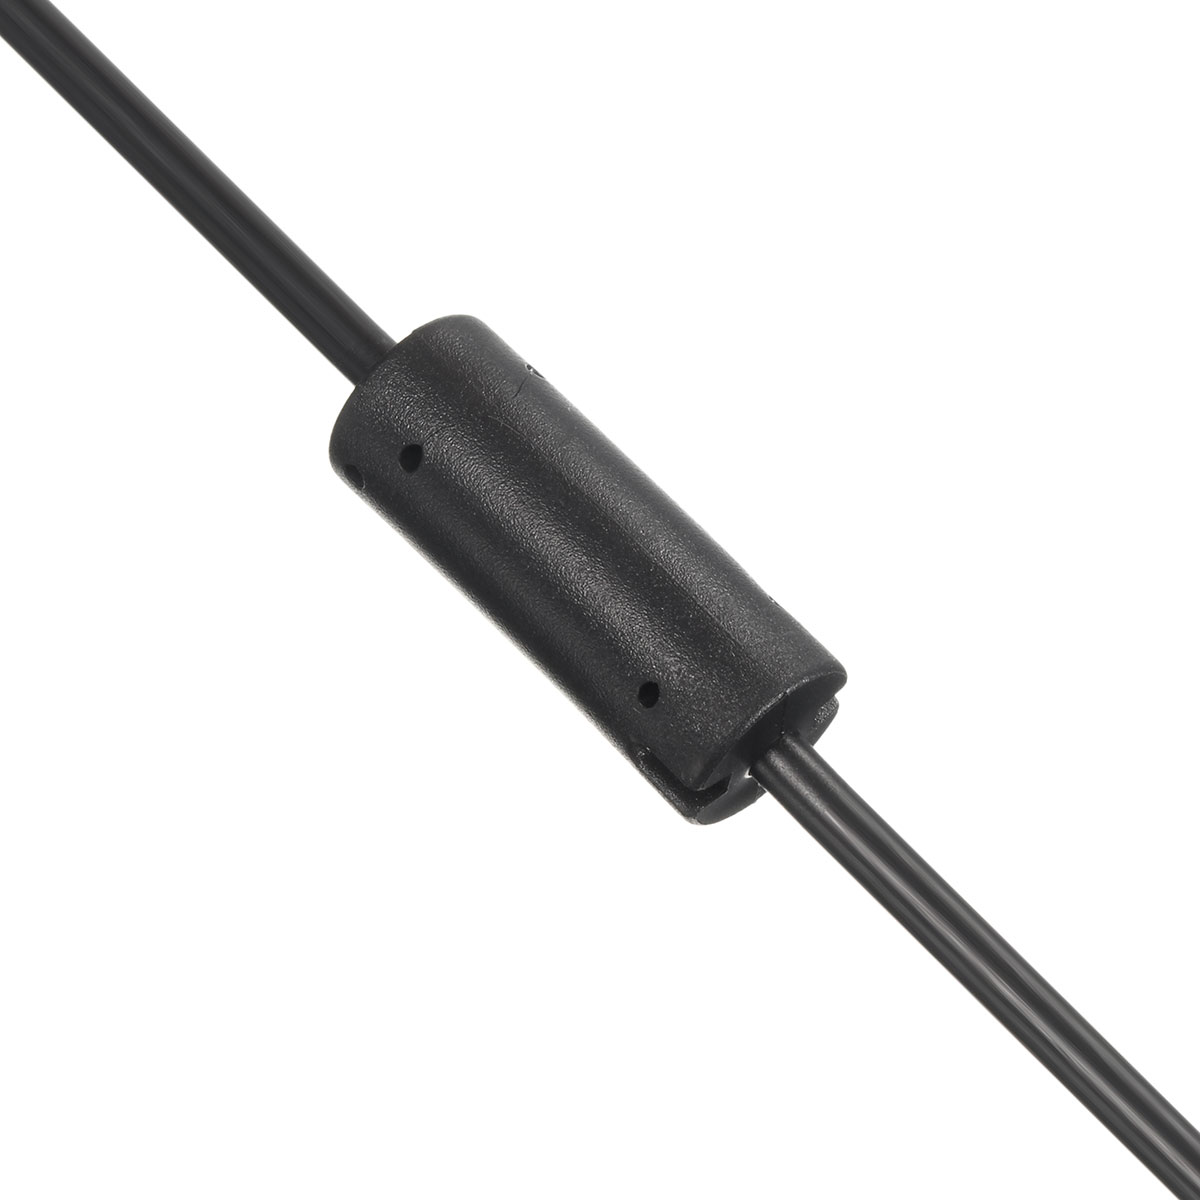 2.3m USB AC Adapter Power Supply Cable for Xbox 360 Kinect Sensor EU/US Plug 14